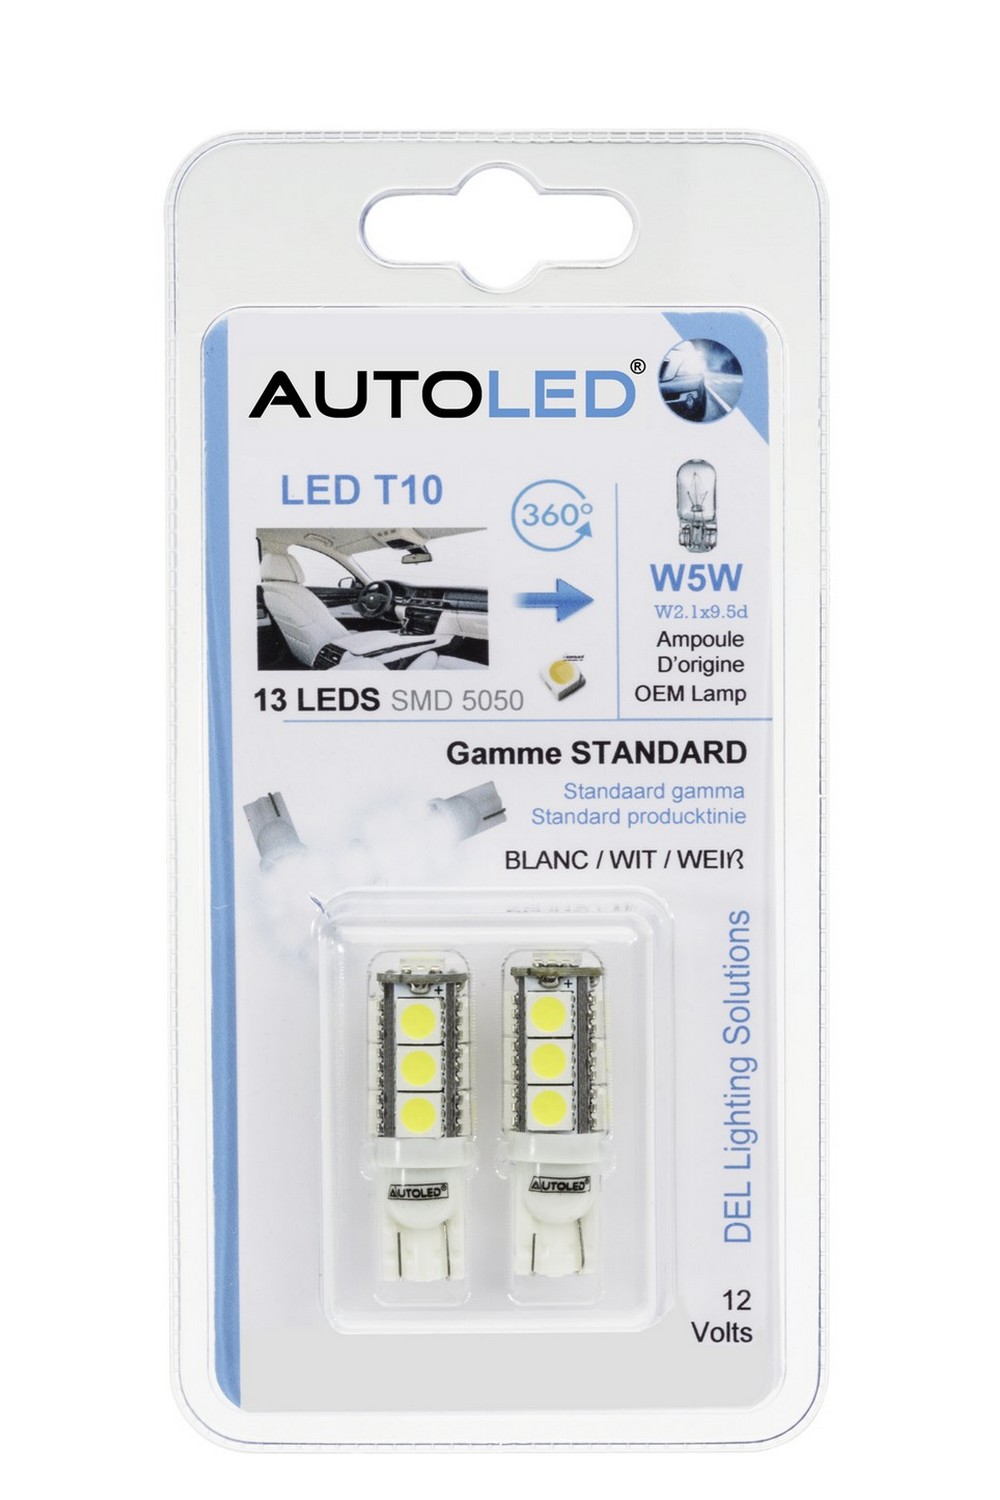 Ampoule T10 W5W LED Canbus 9 SMD Veilleuse 6000K Feux de position Voiture